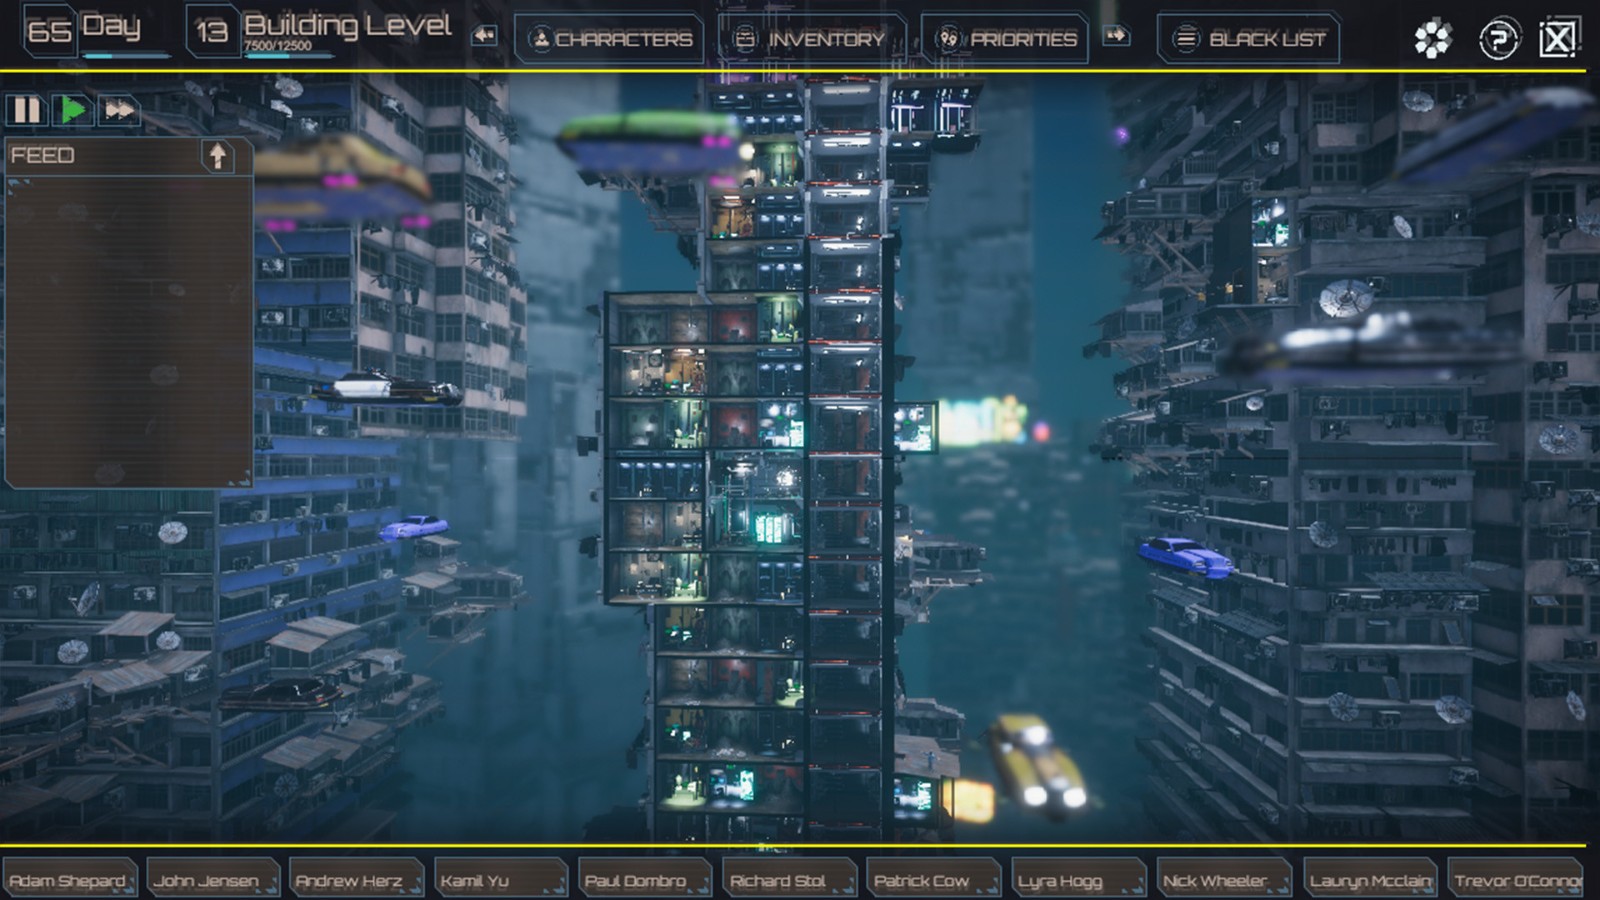 赛博朋克基地建设模拟游戏《Dystopians》上架Steam 支持中文